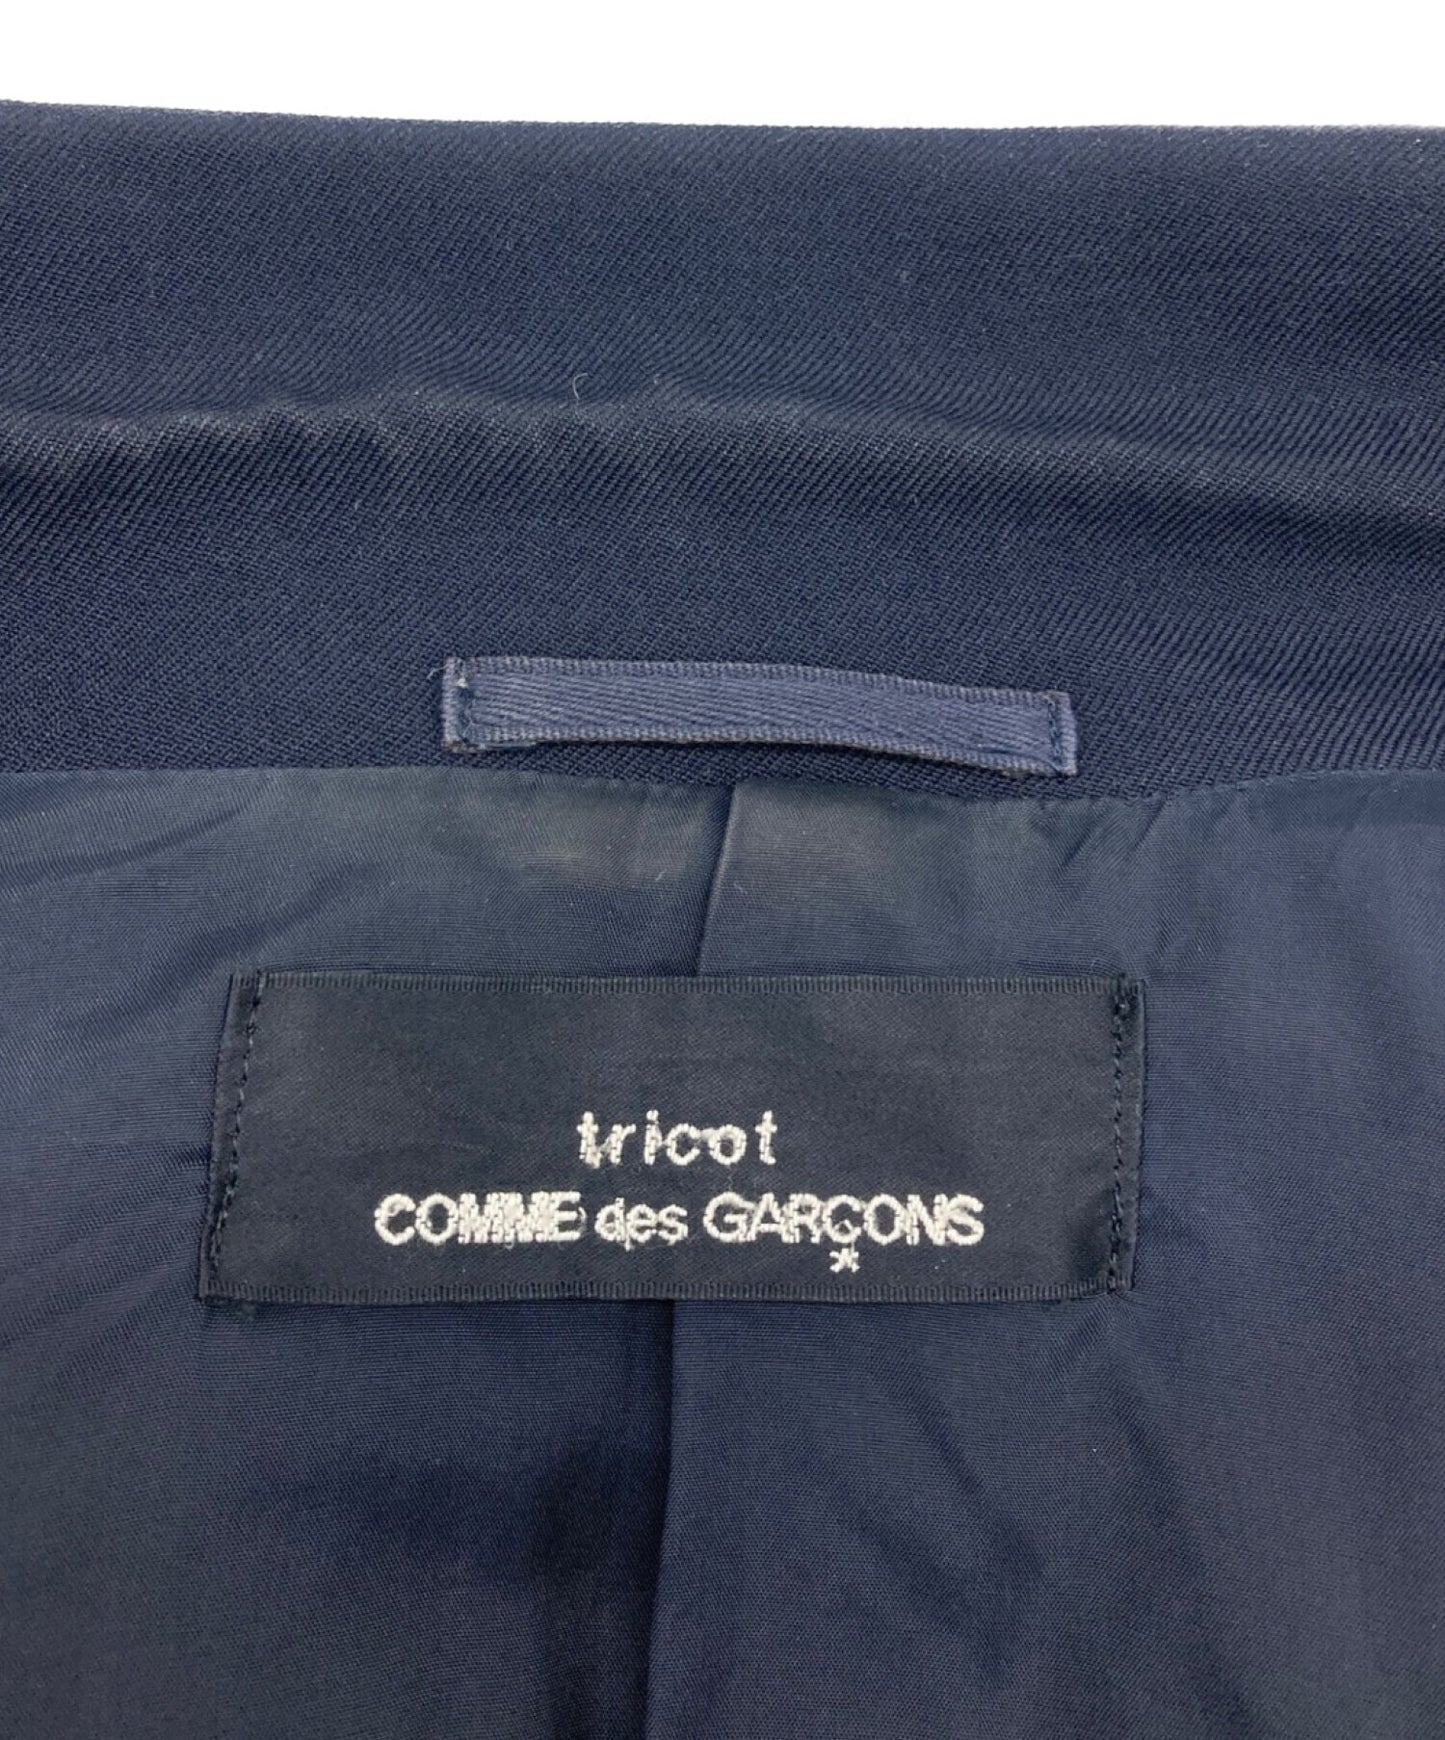 Tricot Comme des Garcons腰部裁縫夾克TJ-080070